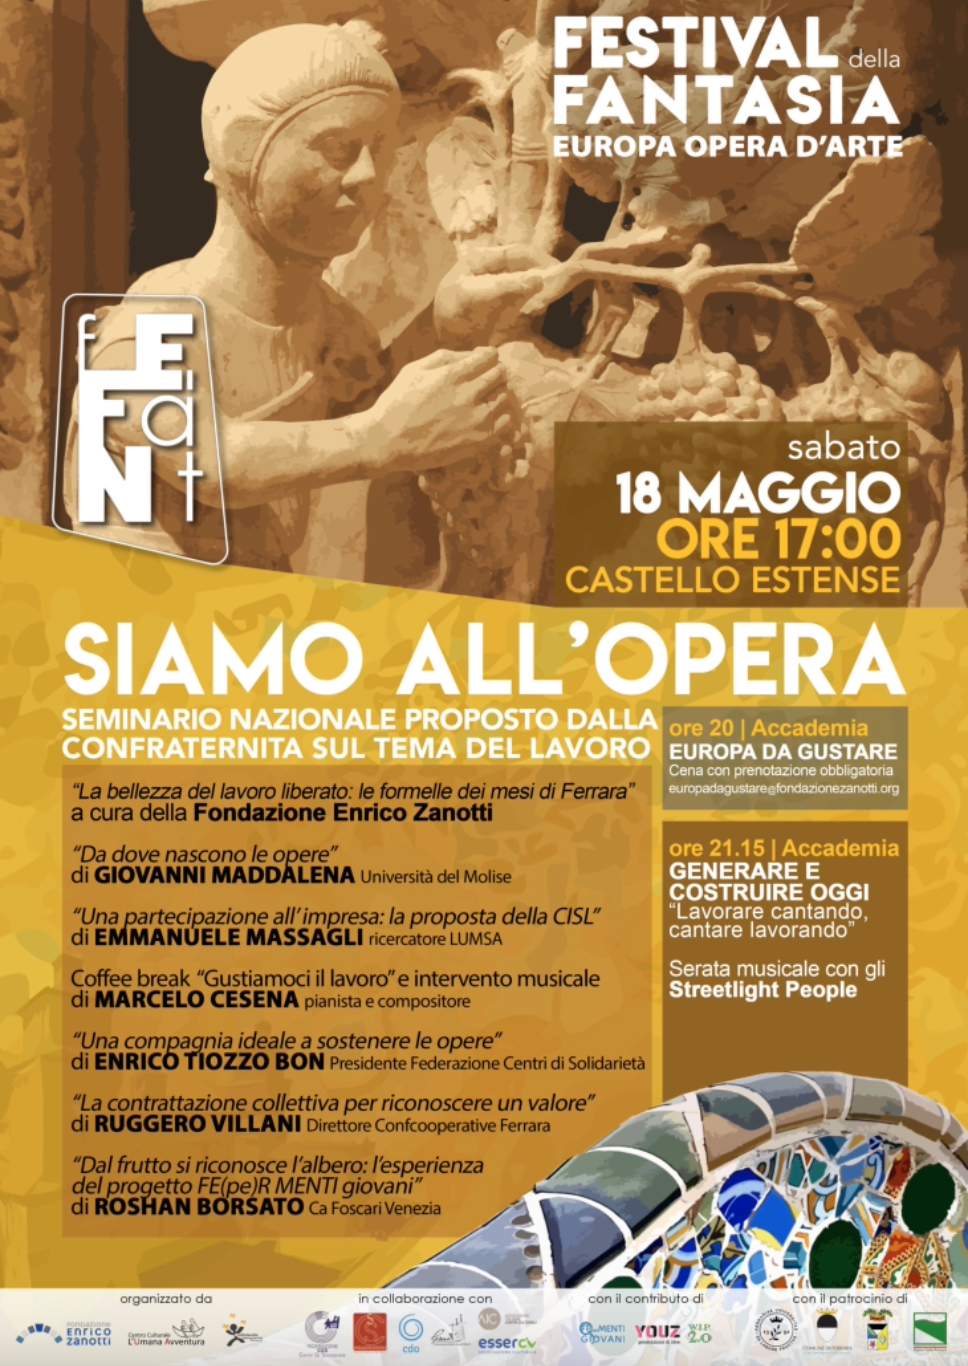 Featured image for “Ferrara: Festival della Fantasia. SIamo all’opera”